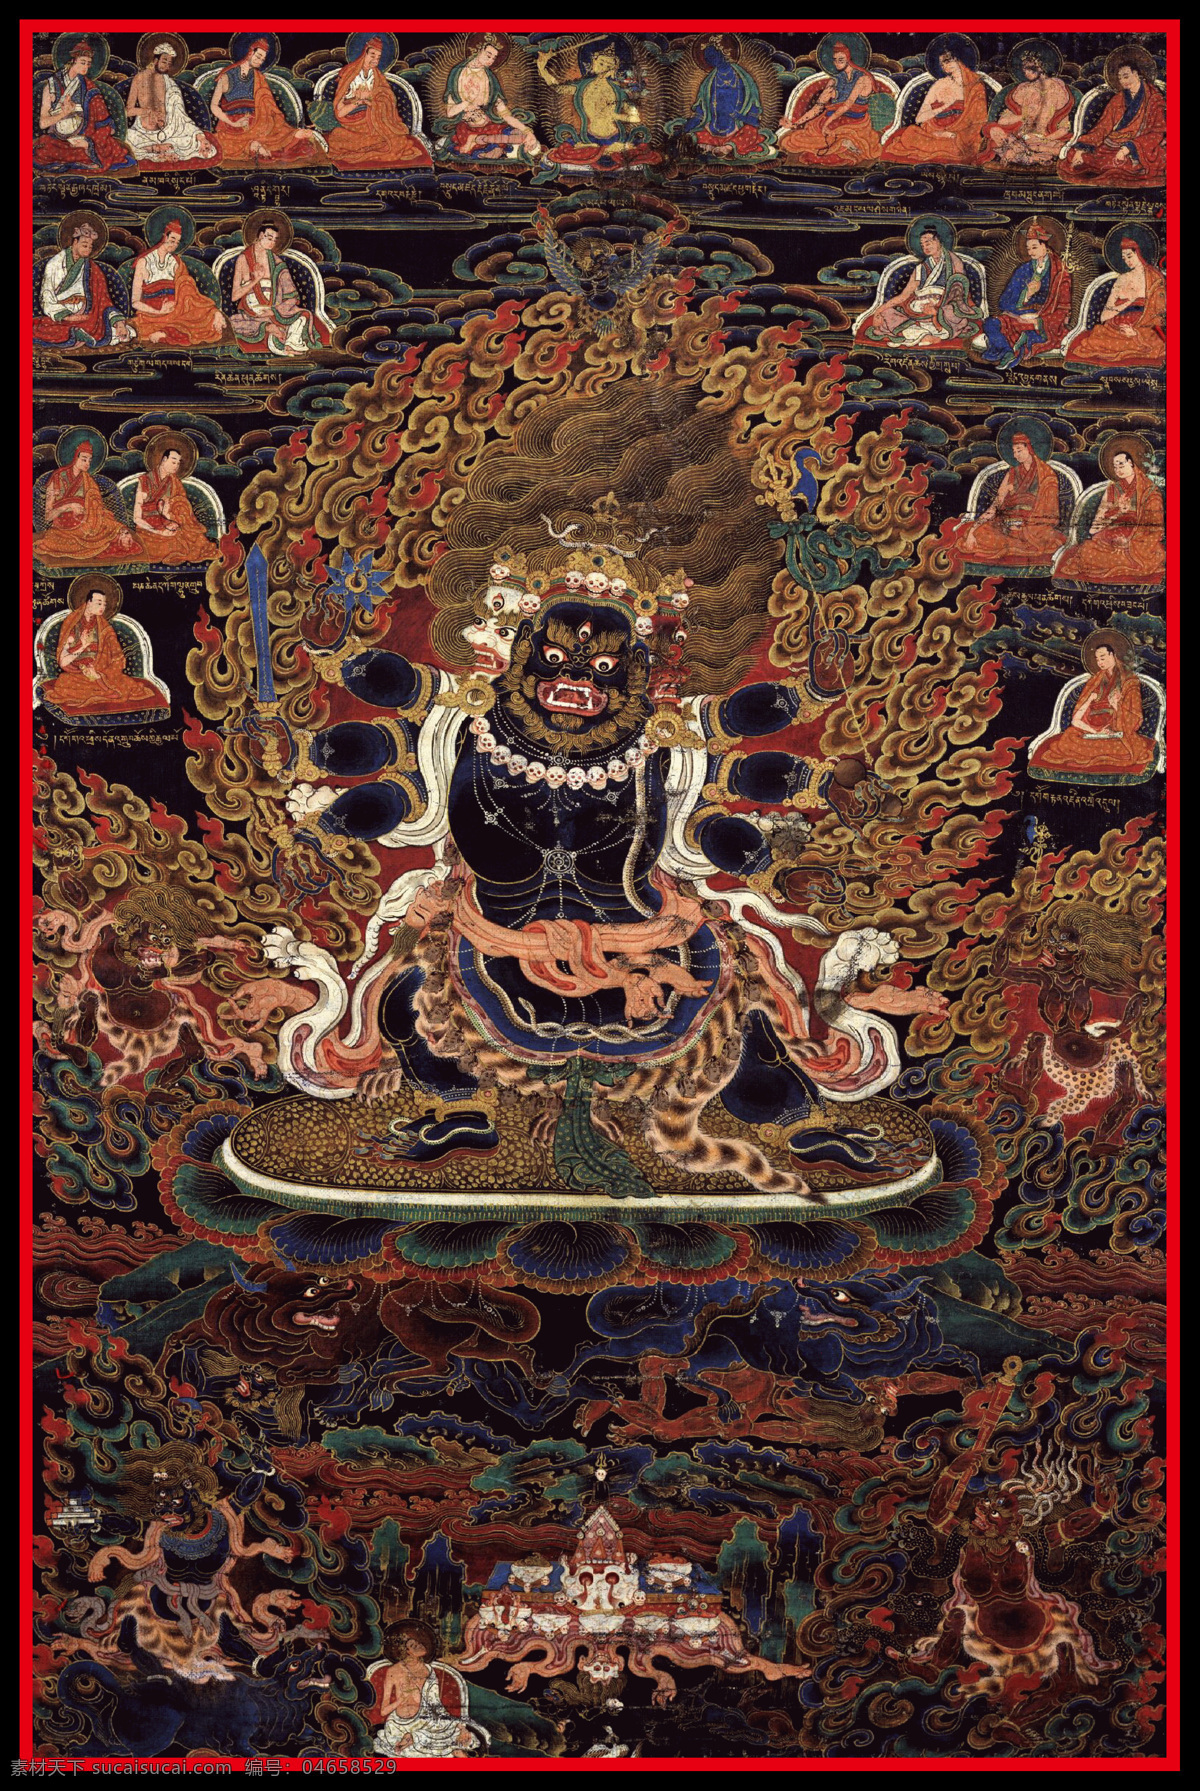 护法金刚 唐卡 老唐卡 传承 西藏 藏传 佛教 密宗 法器 佛 菩萨 成就 成就者 大德 喇嘛 活佛 护法 金刚 宗教信仰 文化艺术